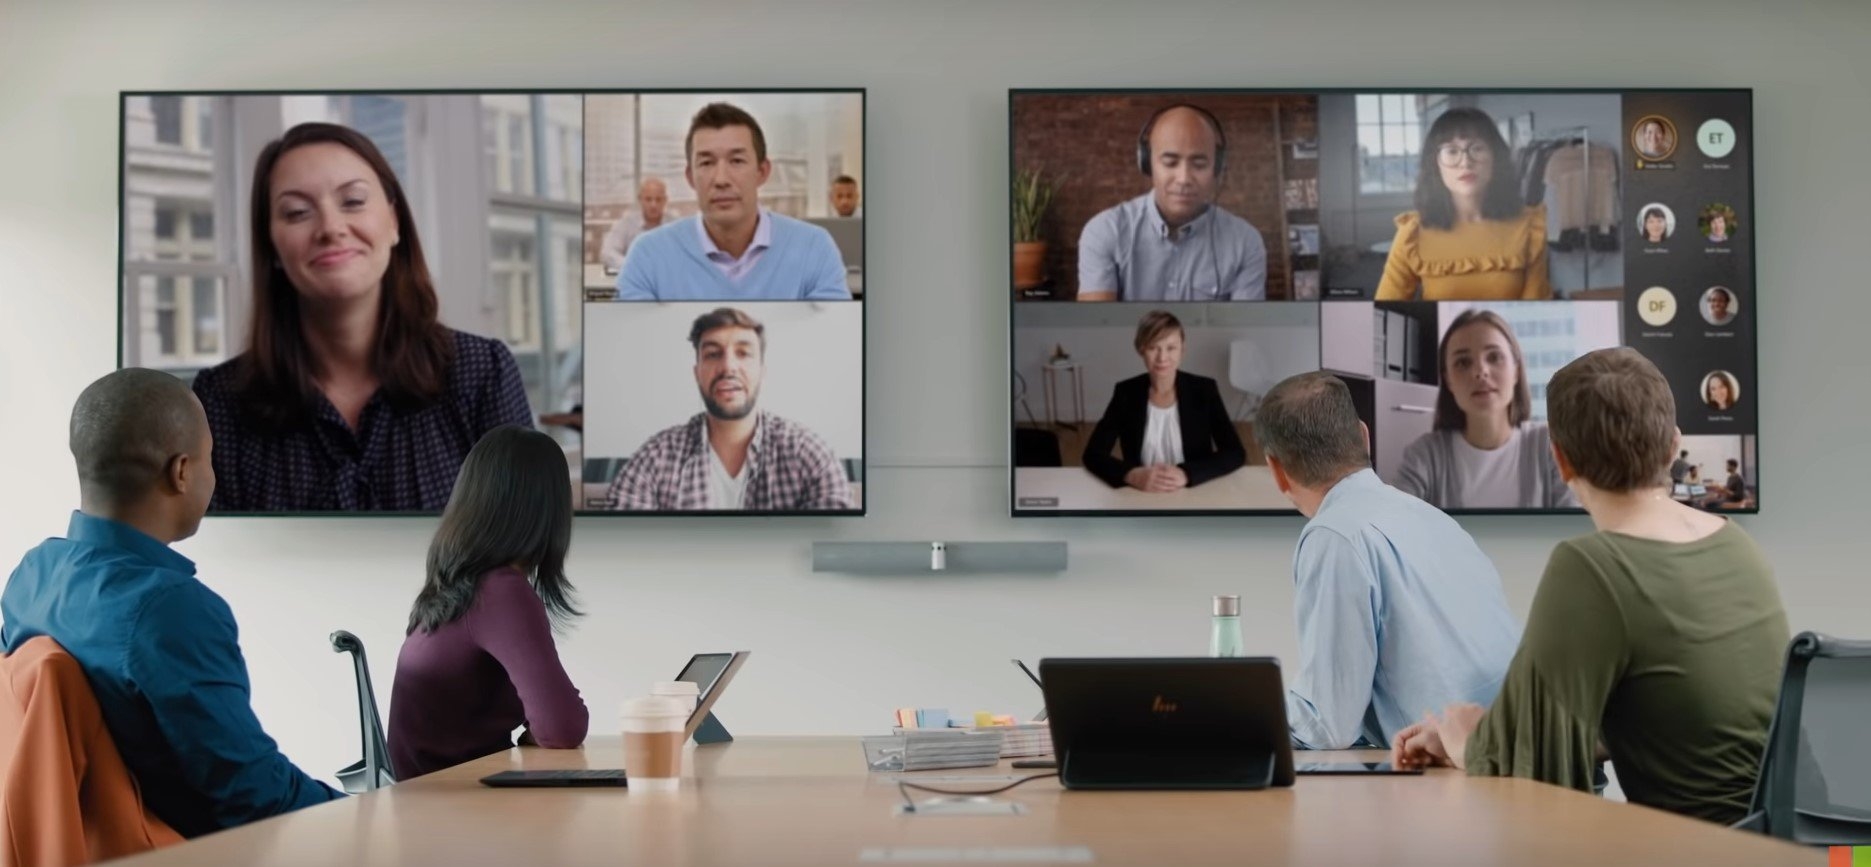 ฟีเจอร์ใหม่ประชุมไฮบริดใน Microsoft Teams กล้องสามารถโฟกัสหน้ารายบุคคลได้ด้วย